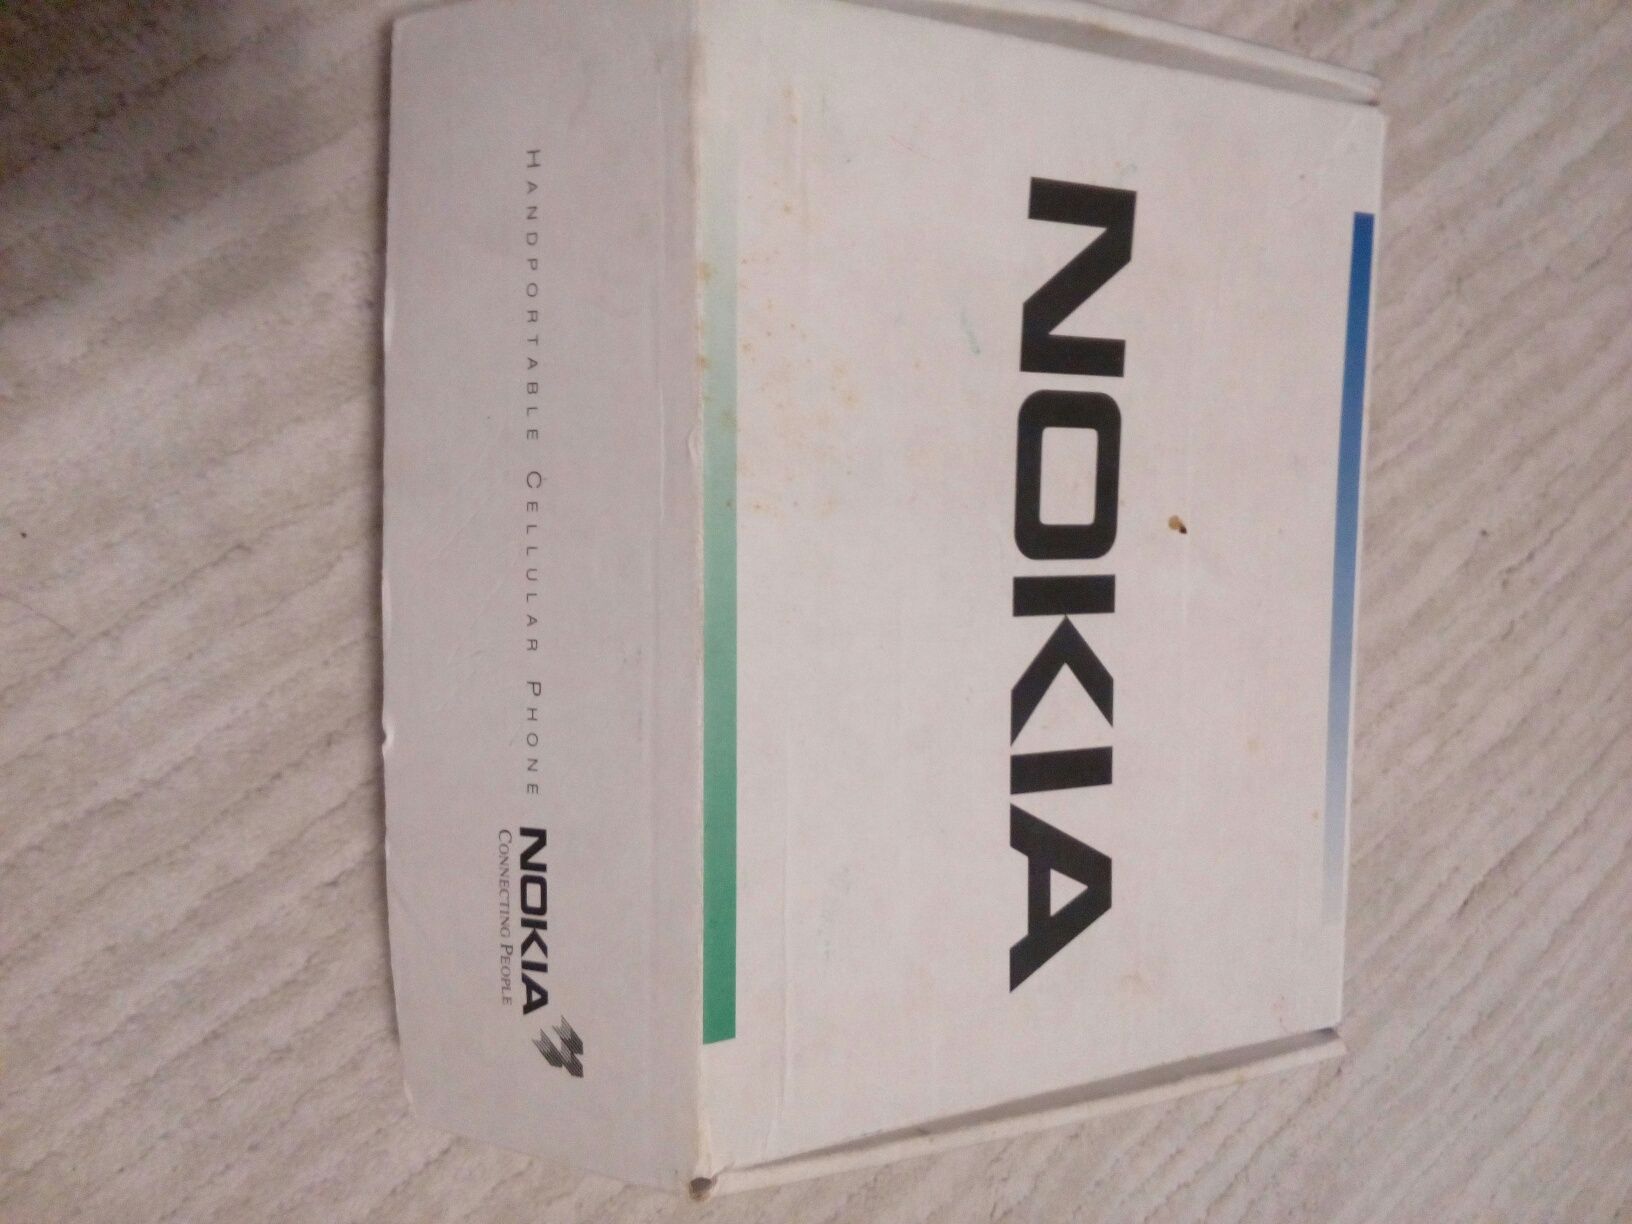 Nokia 450 sprzedam